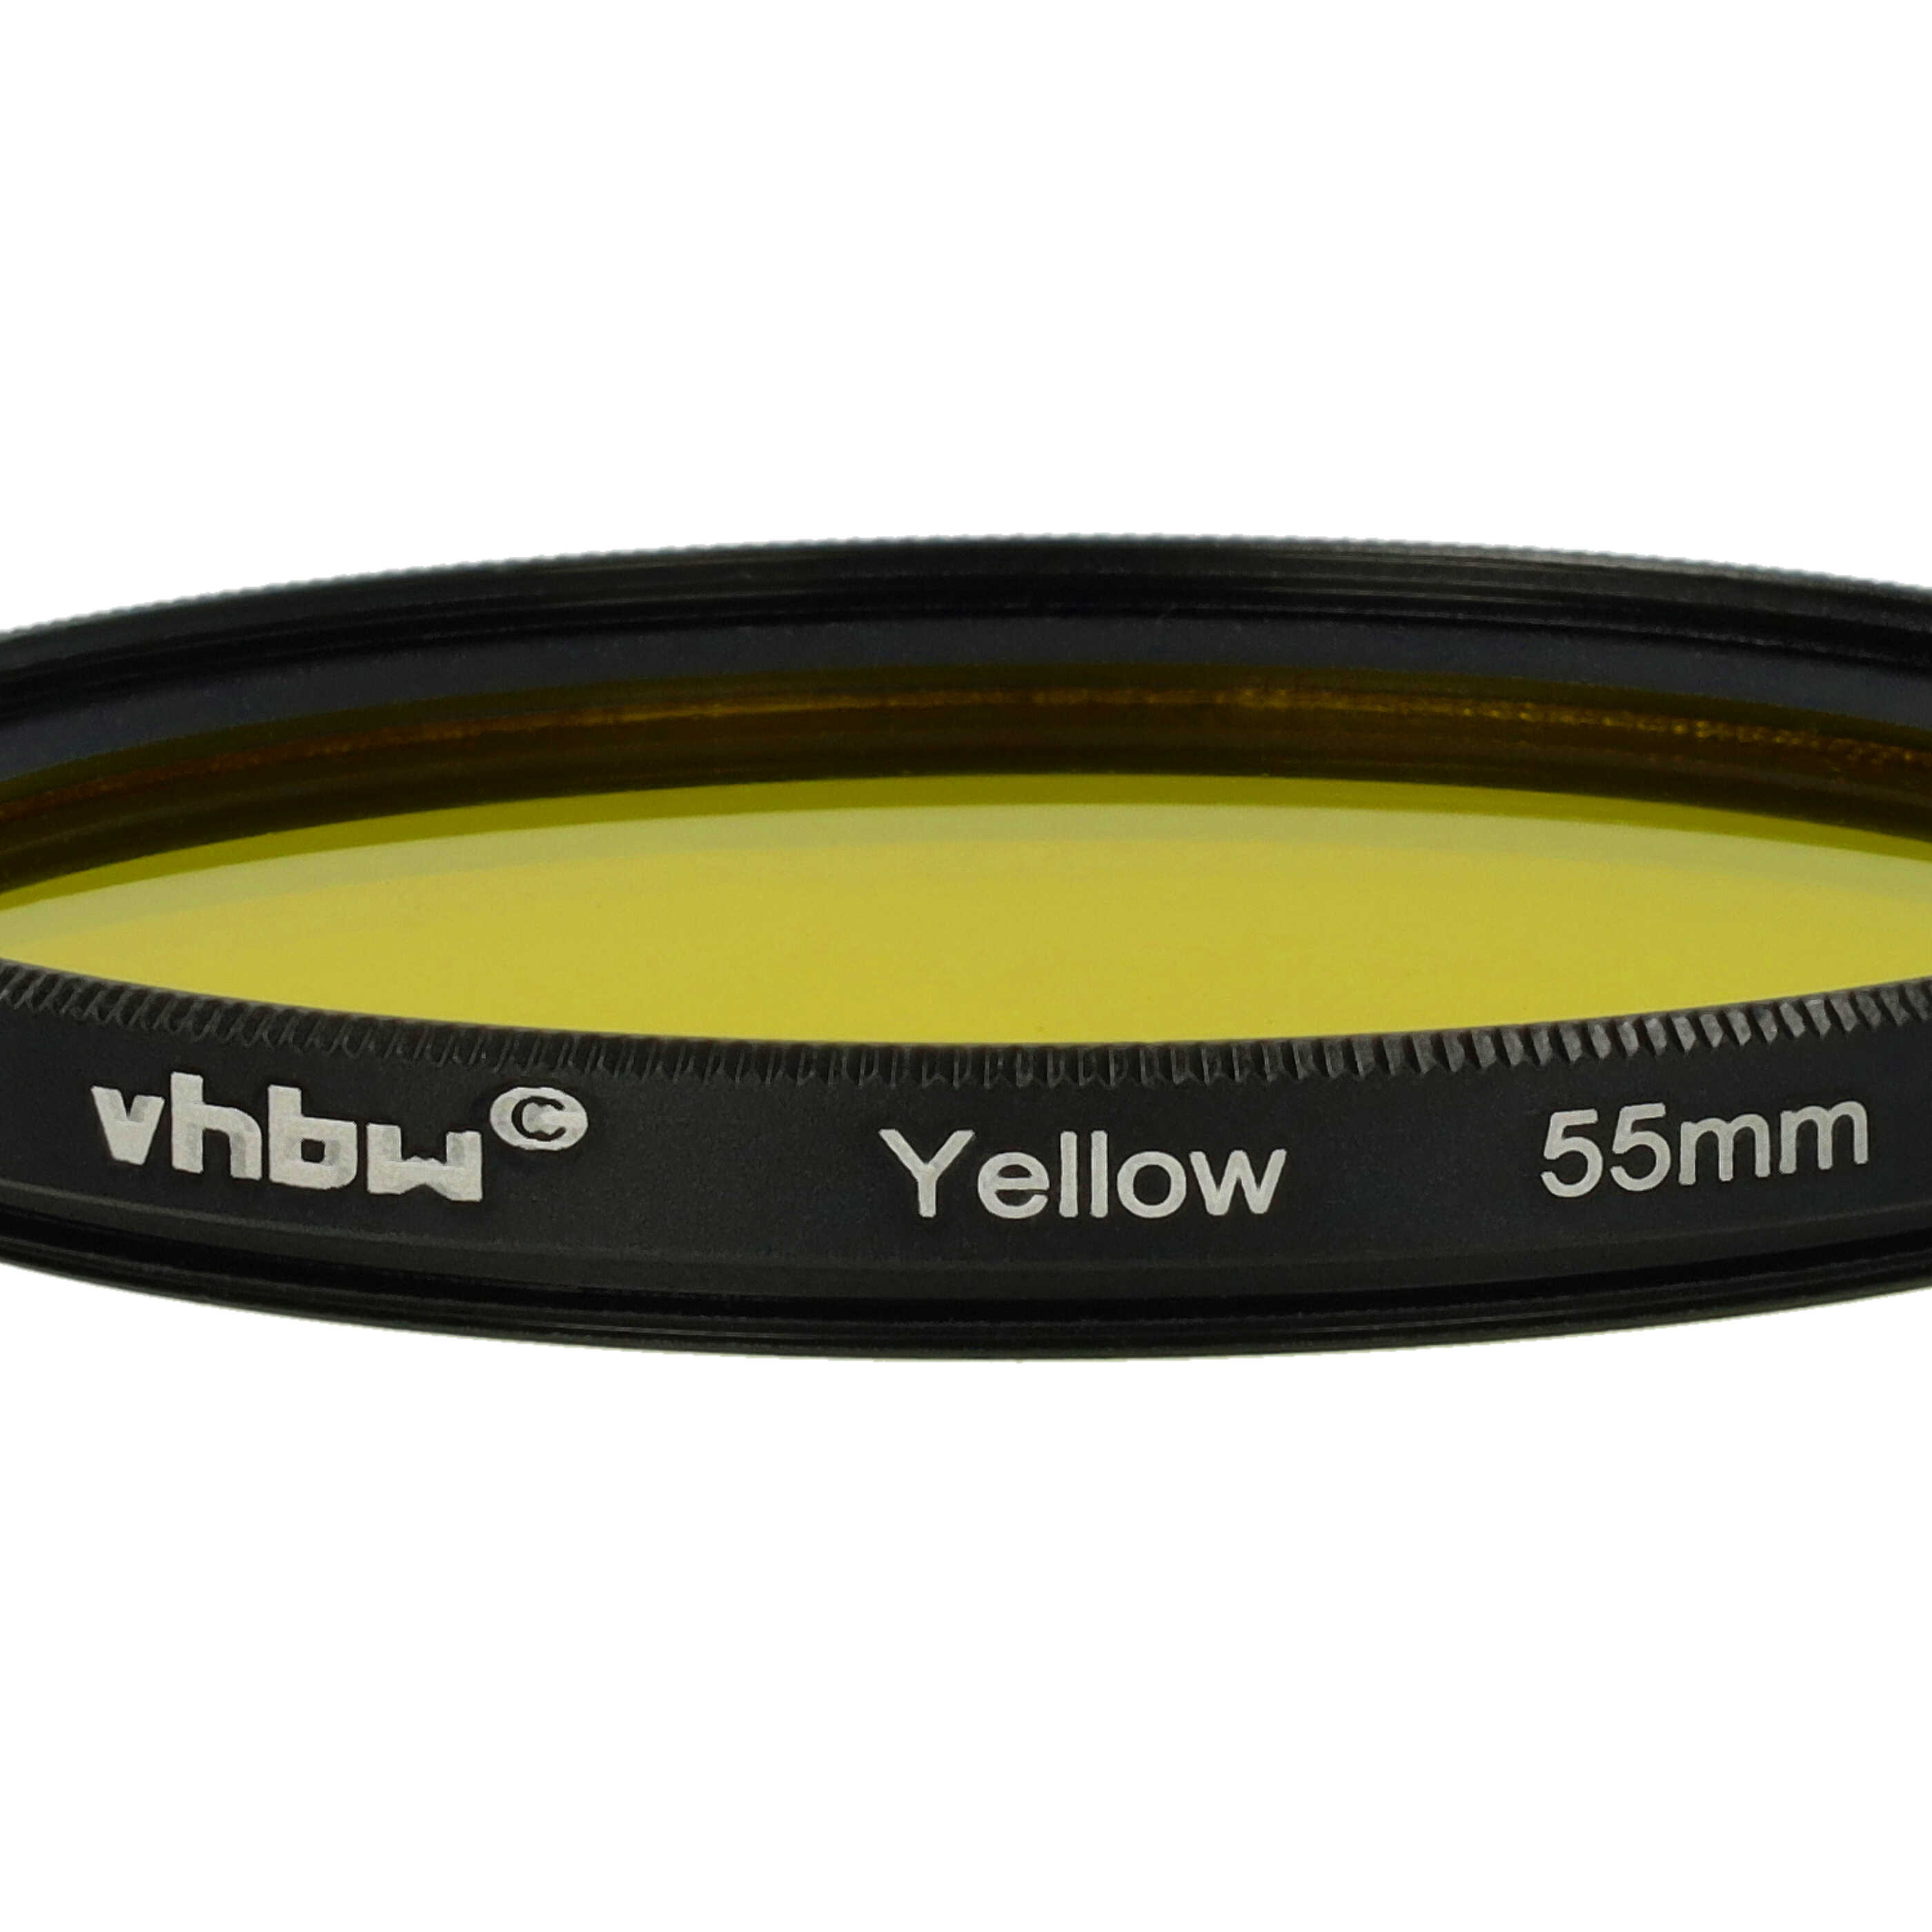 Farbfilter gelb passend für Kamera Objektive mit 55 mm Filtergewinde - Gelbfilter